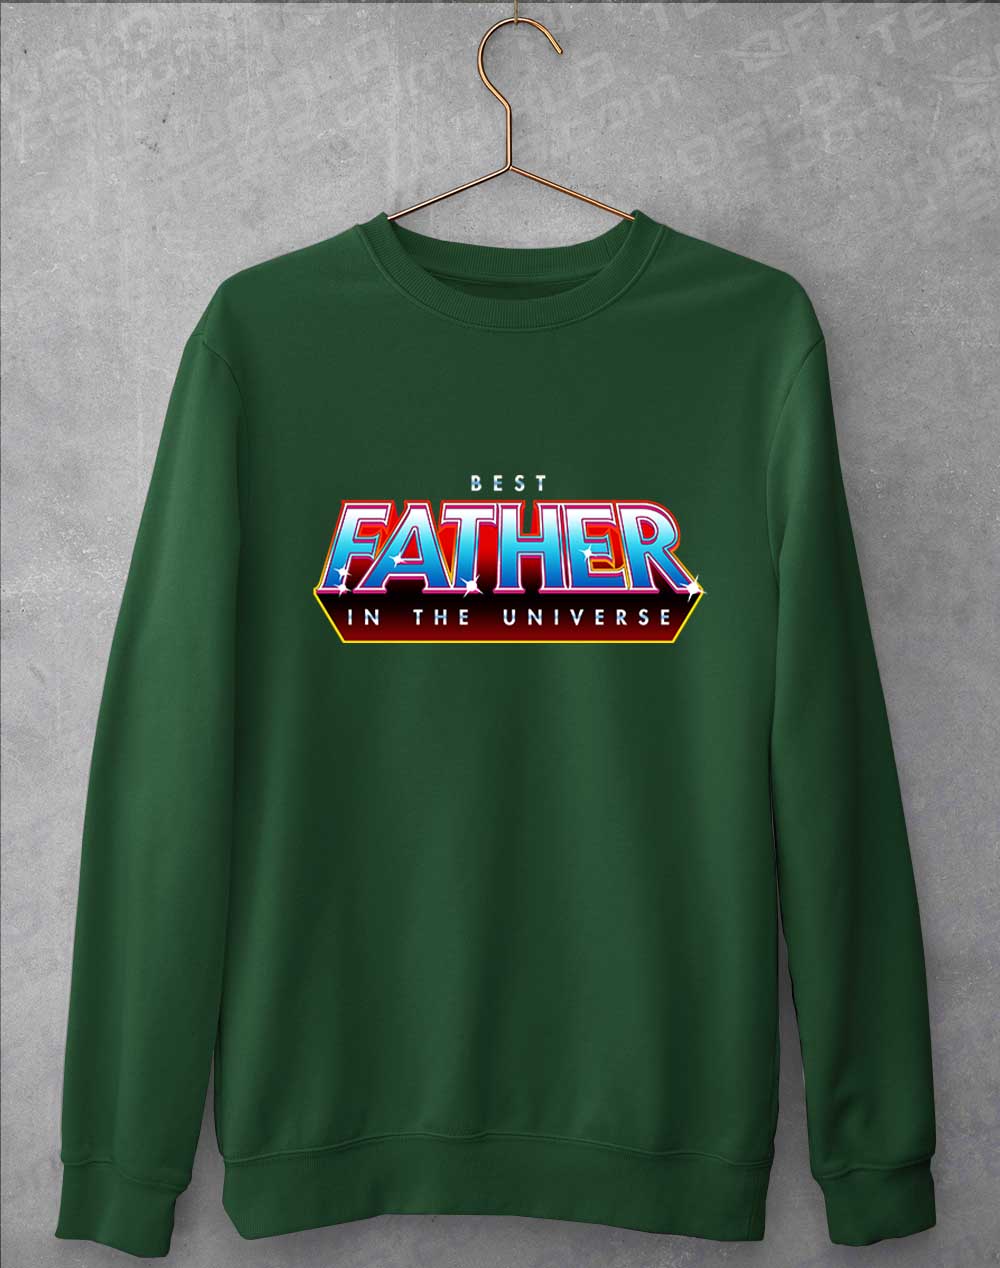 Bottle Green - Best Father in the Universe Sweatshirt